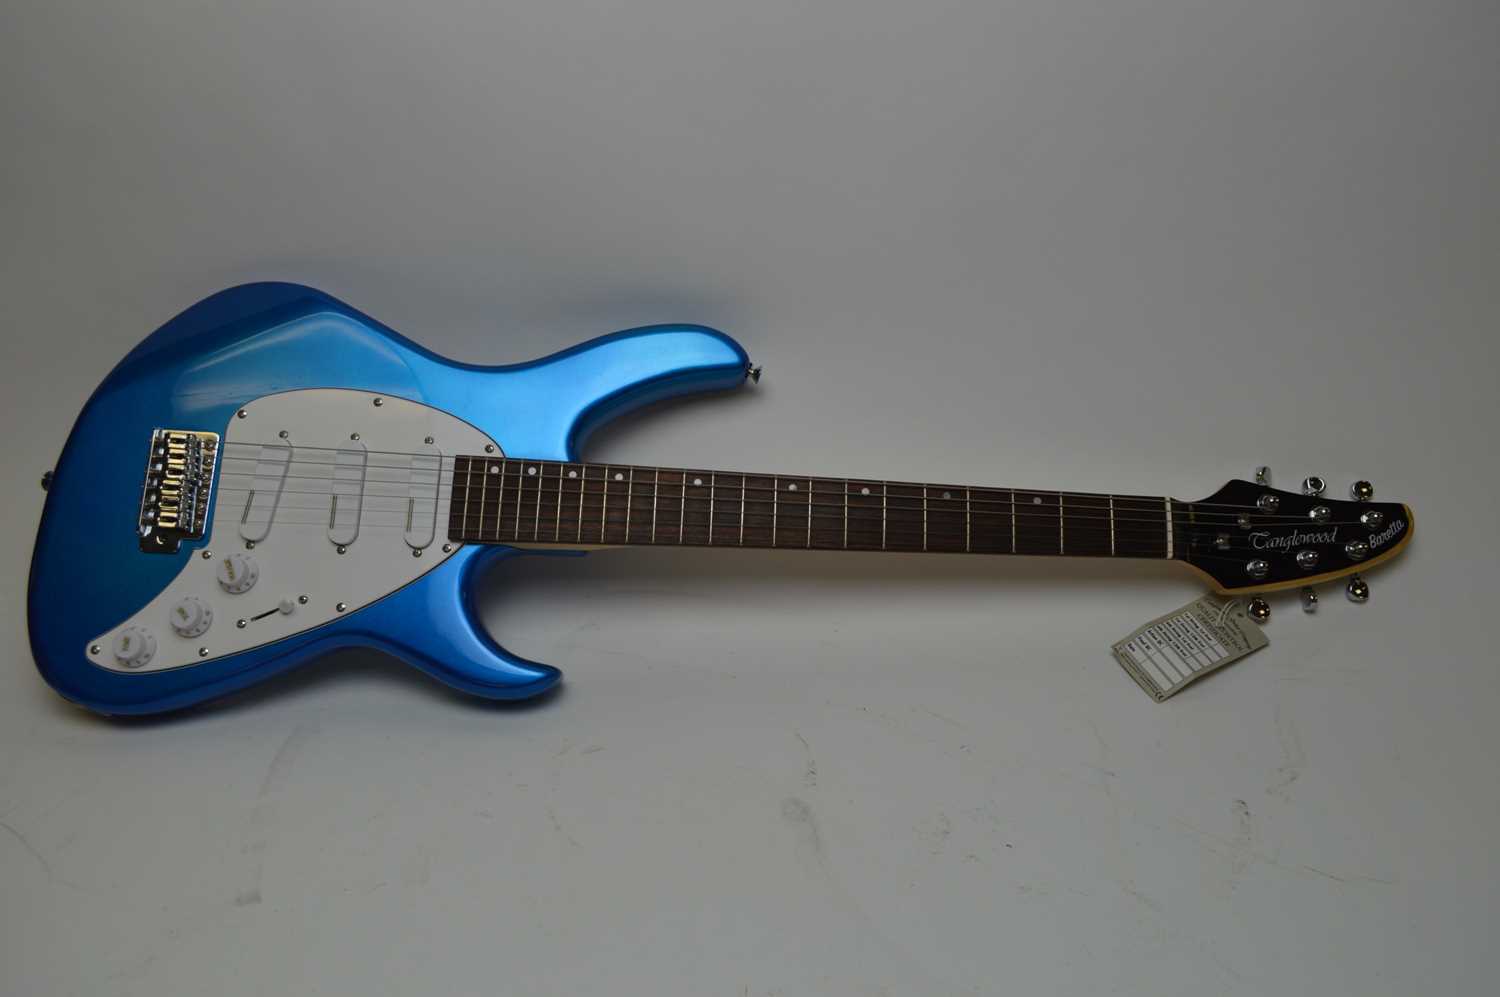 A Tanglewood Baretta electric guitar TE2-BL